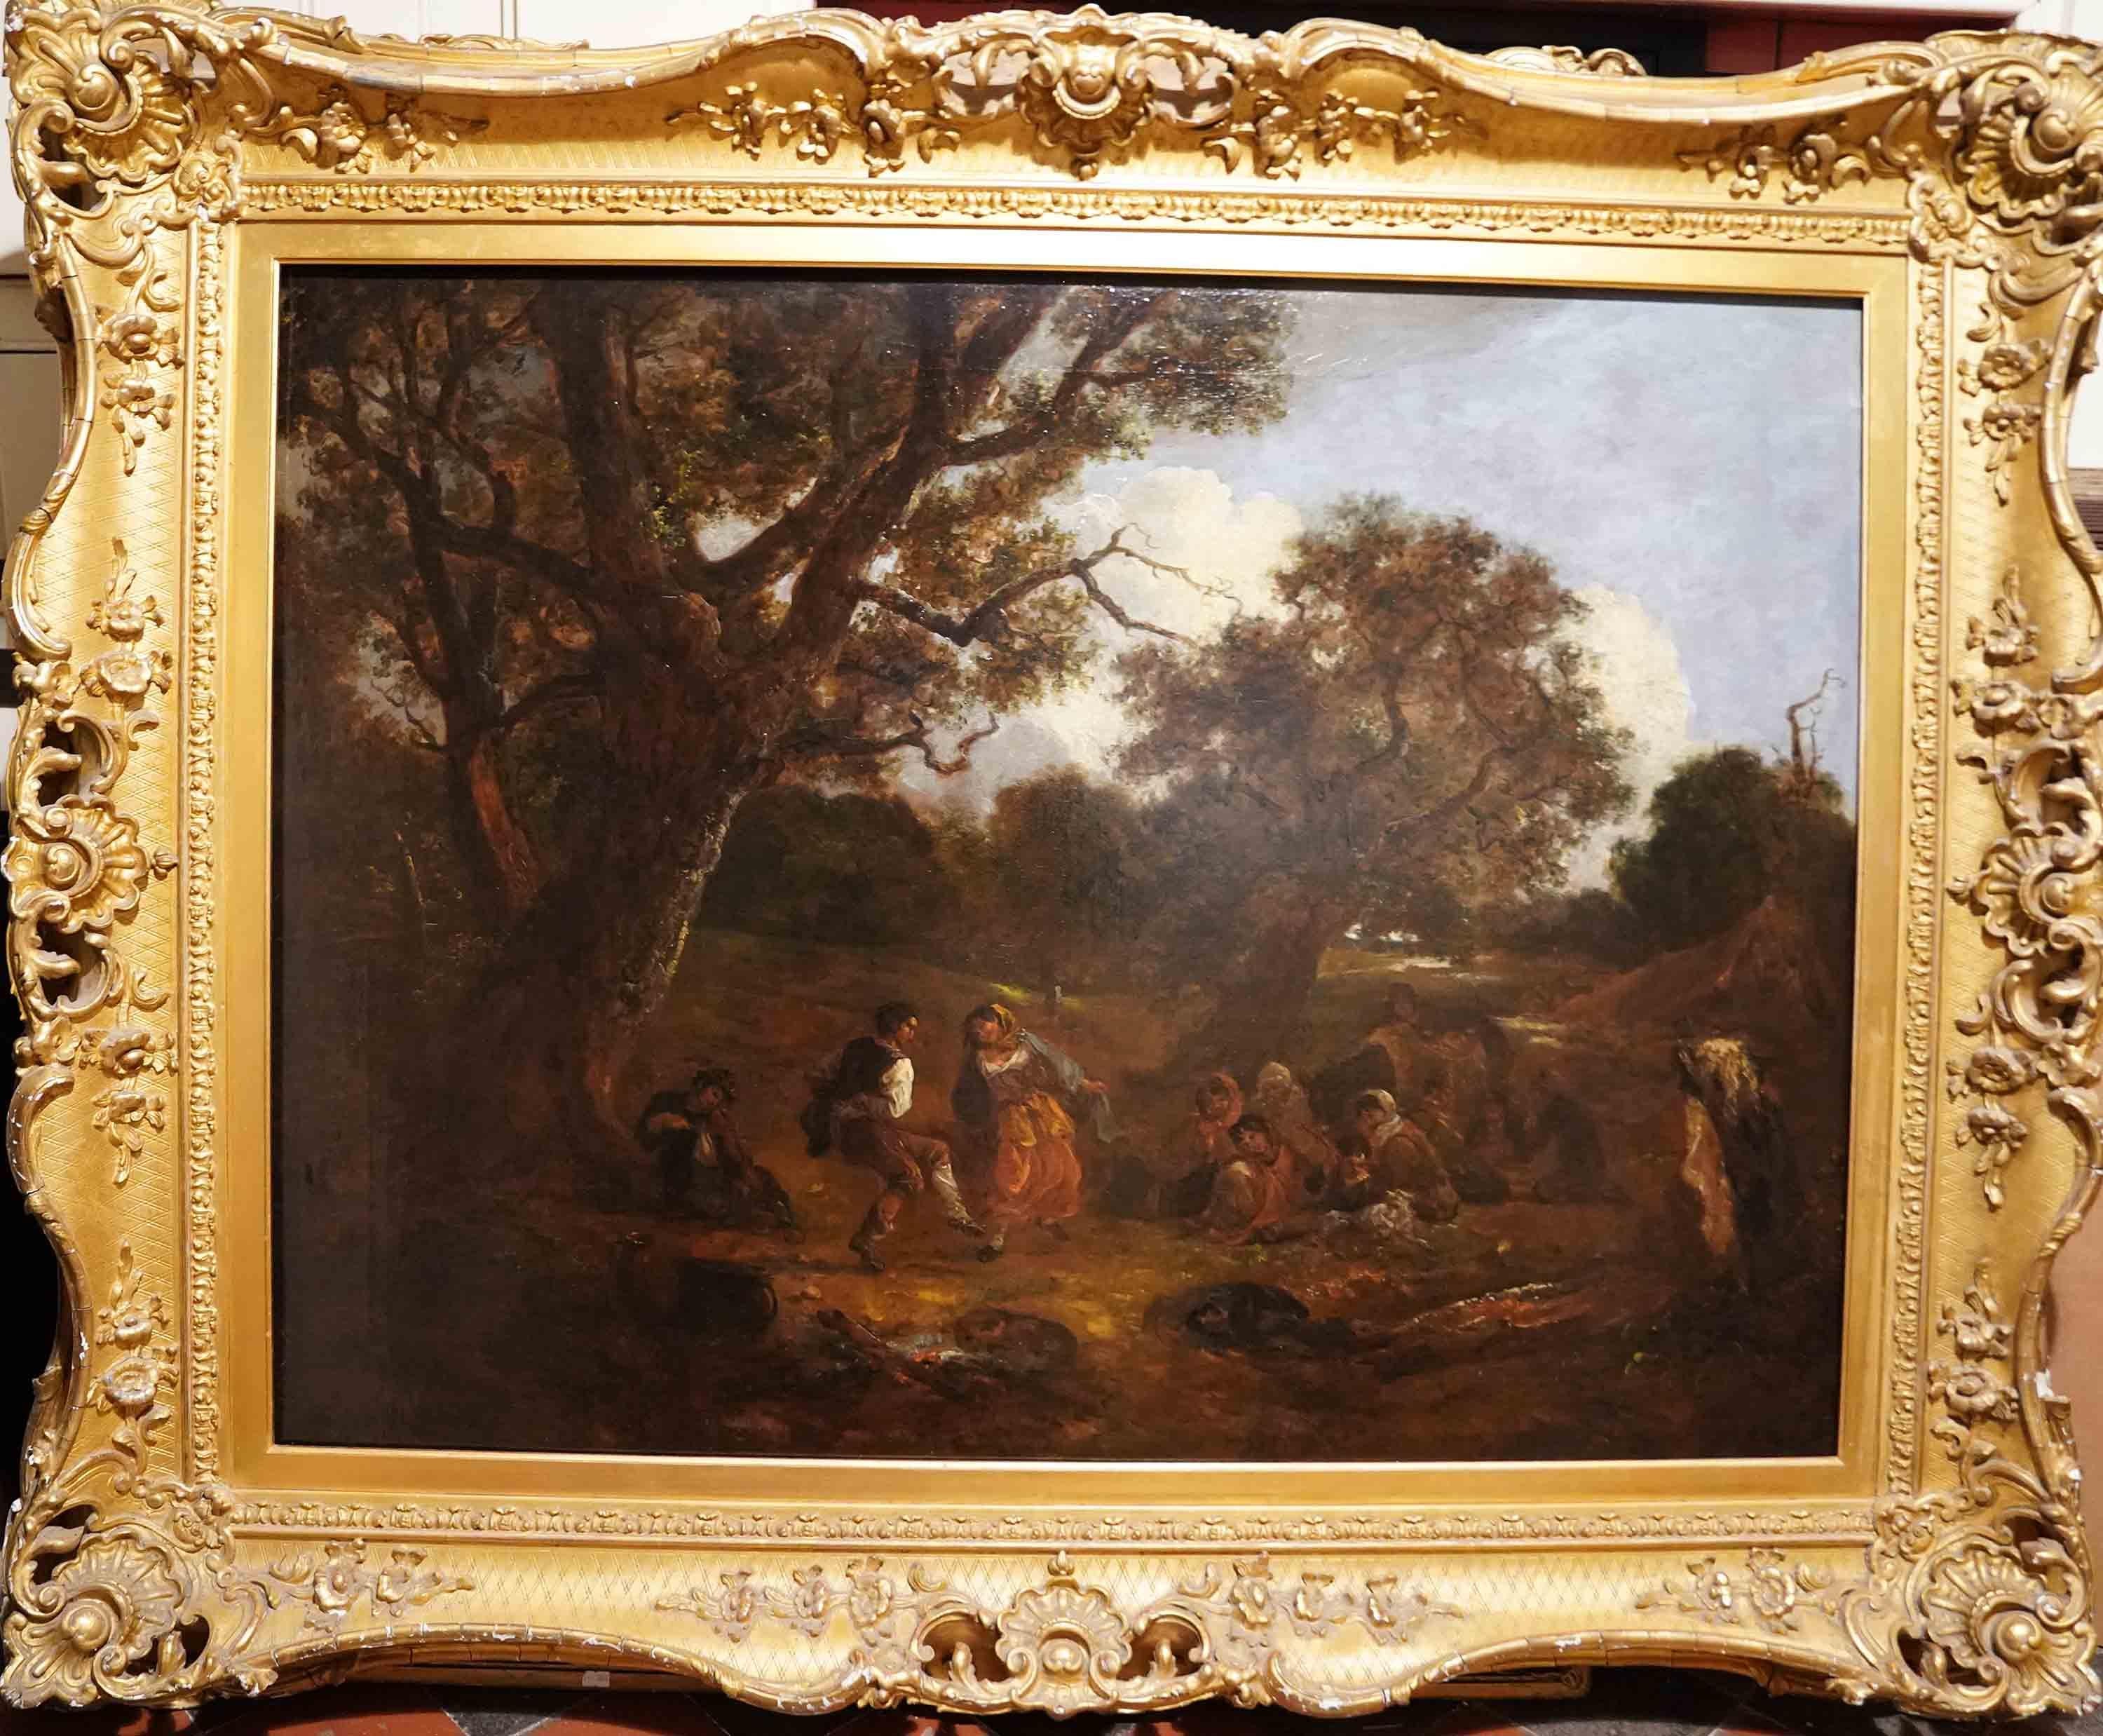 Thomas Baker of Bath Landscape Painting – Tänzerinnen in einer Landschaft – britisches figuratives Landschaftsgemälde des 19. Jahrhunderts